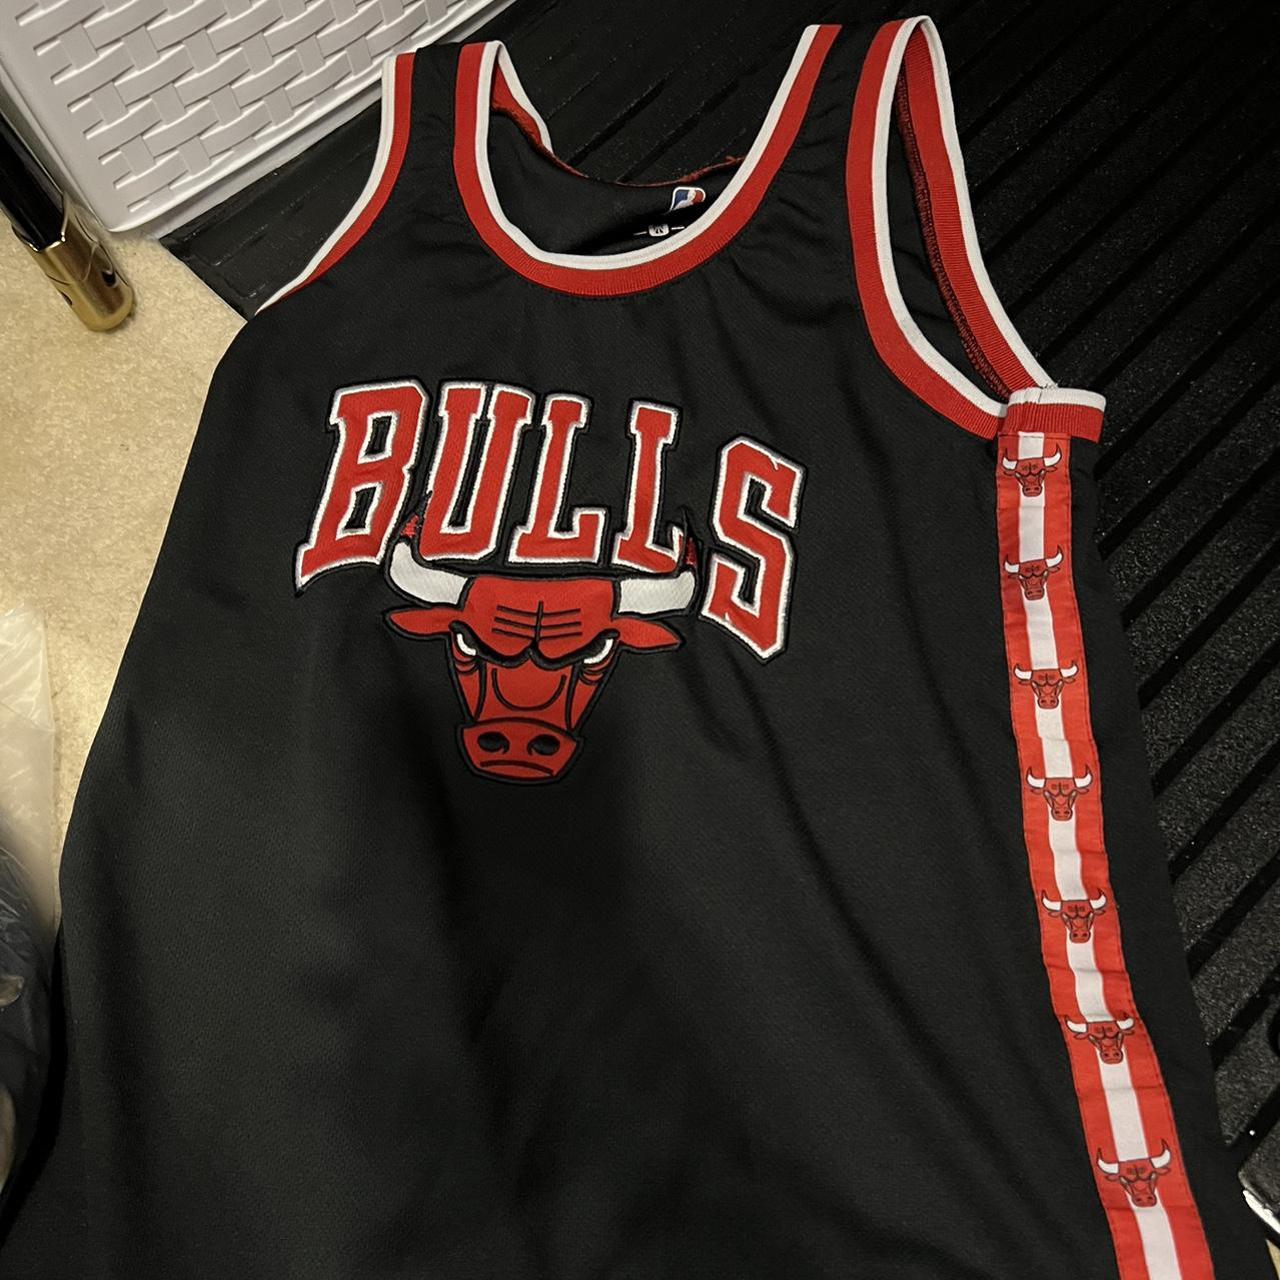 rue21 chicago bulls apparel